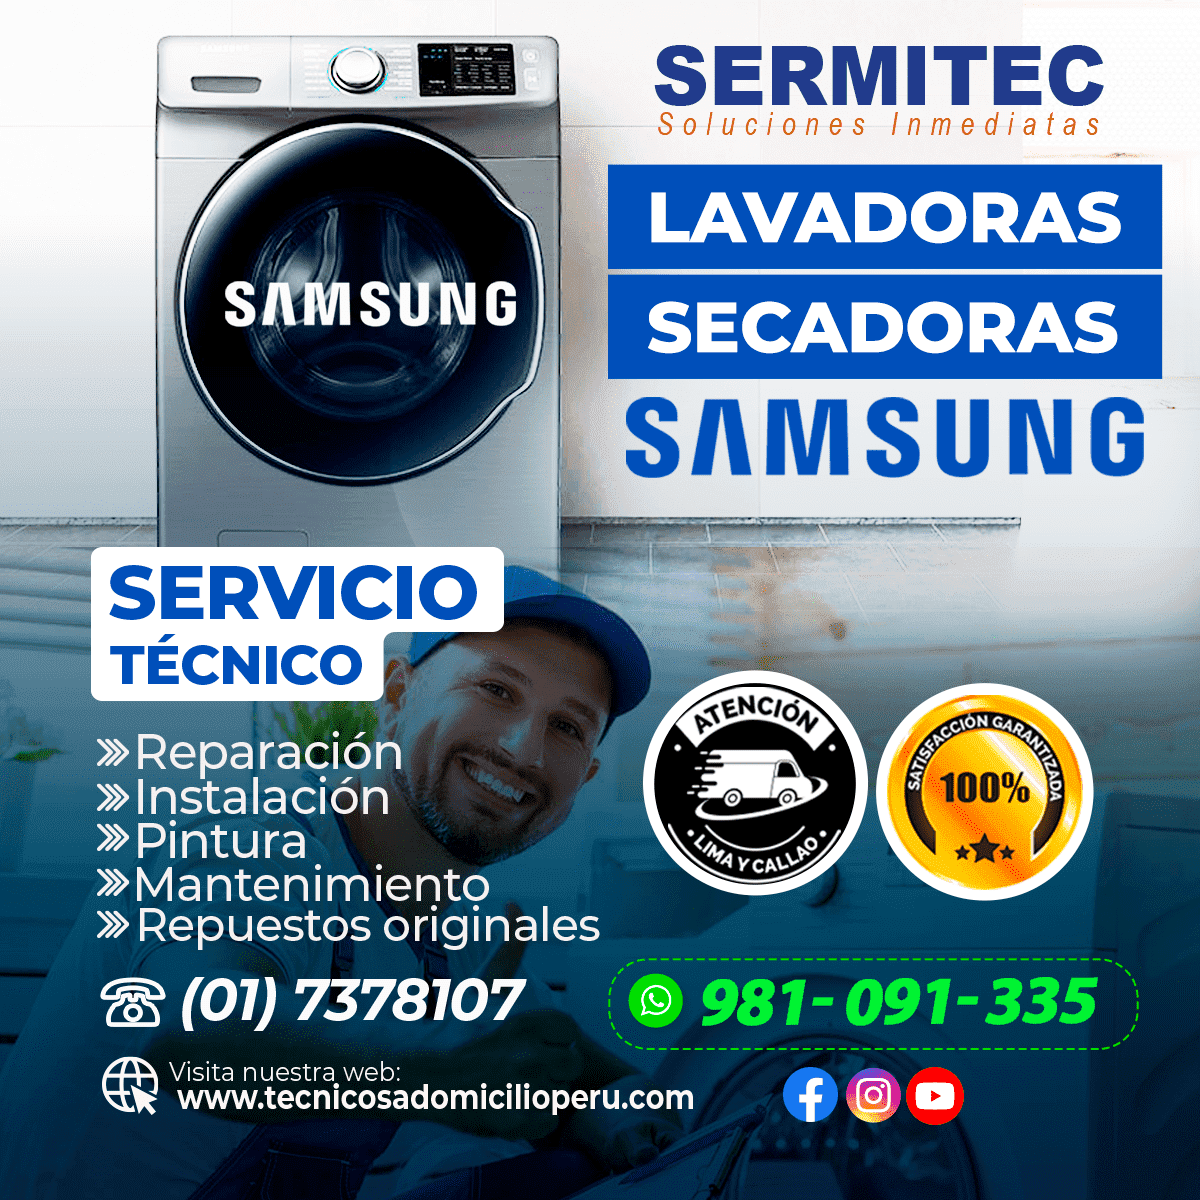 Servicio técnico de LAVASECAS-LAVADORAS-SECADORAS en SAN LUIS  981091335